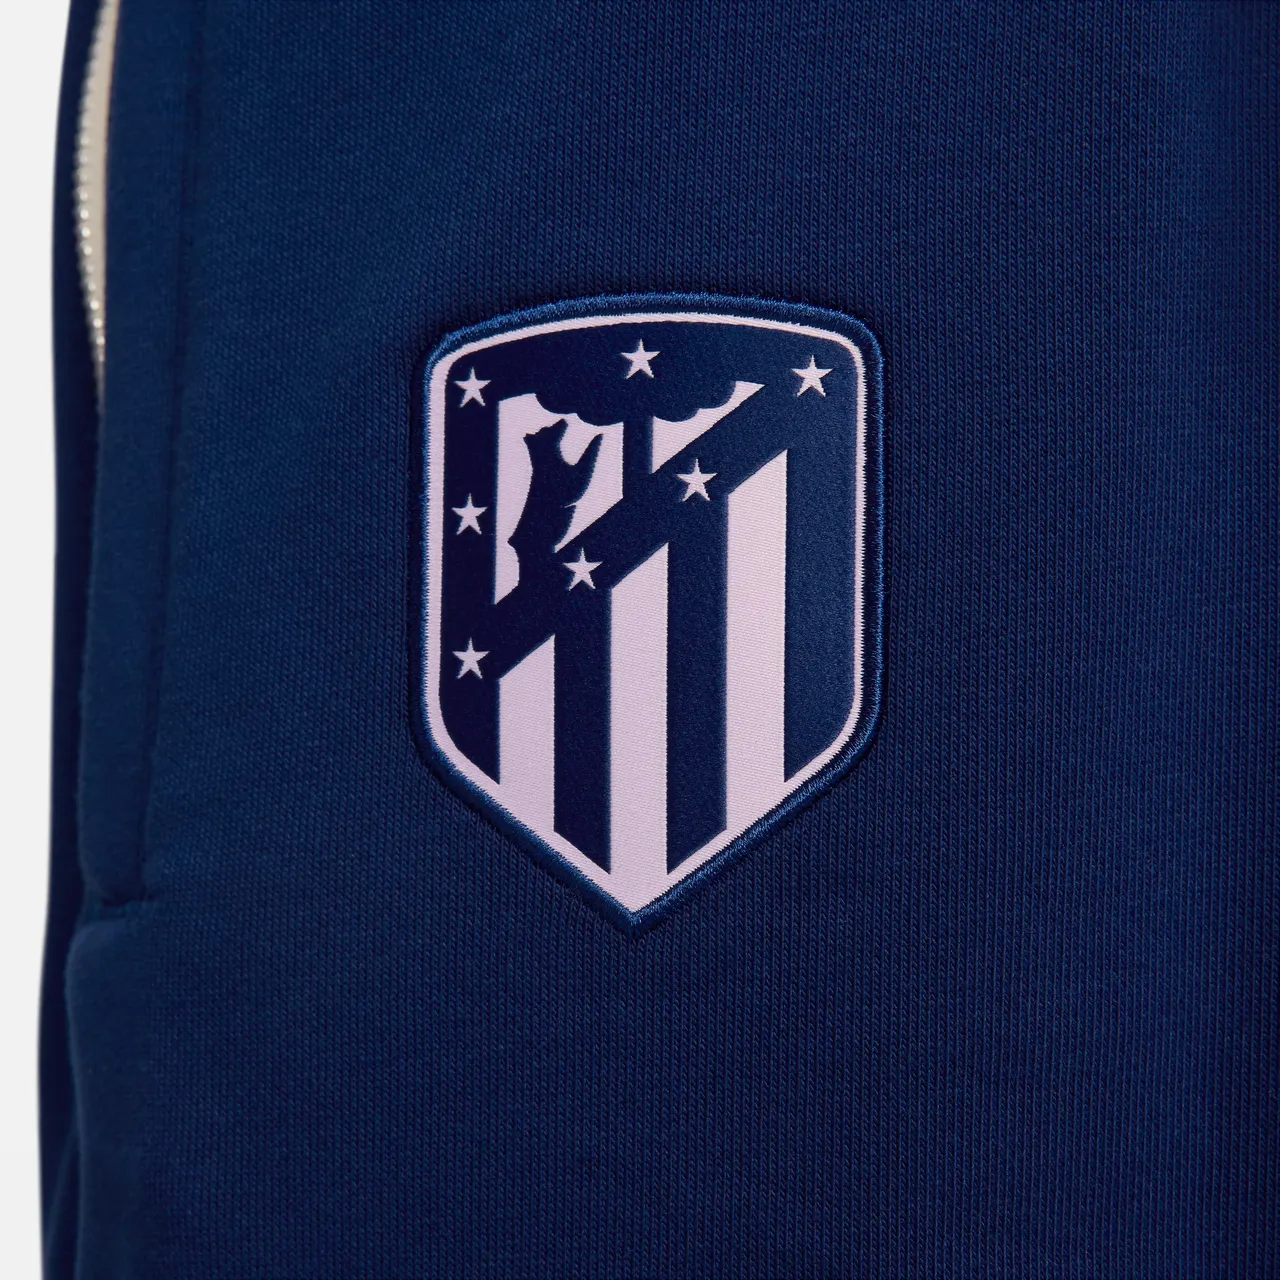 Atlético Madrid Standard Issue Nike Fußballhose für Herren - Blau